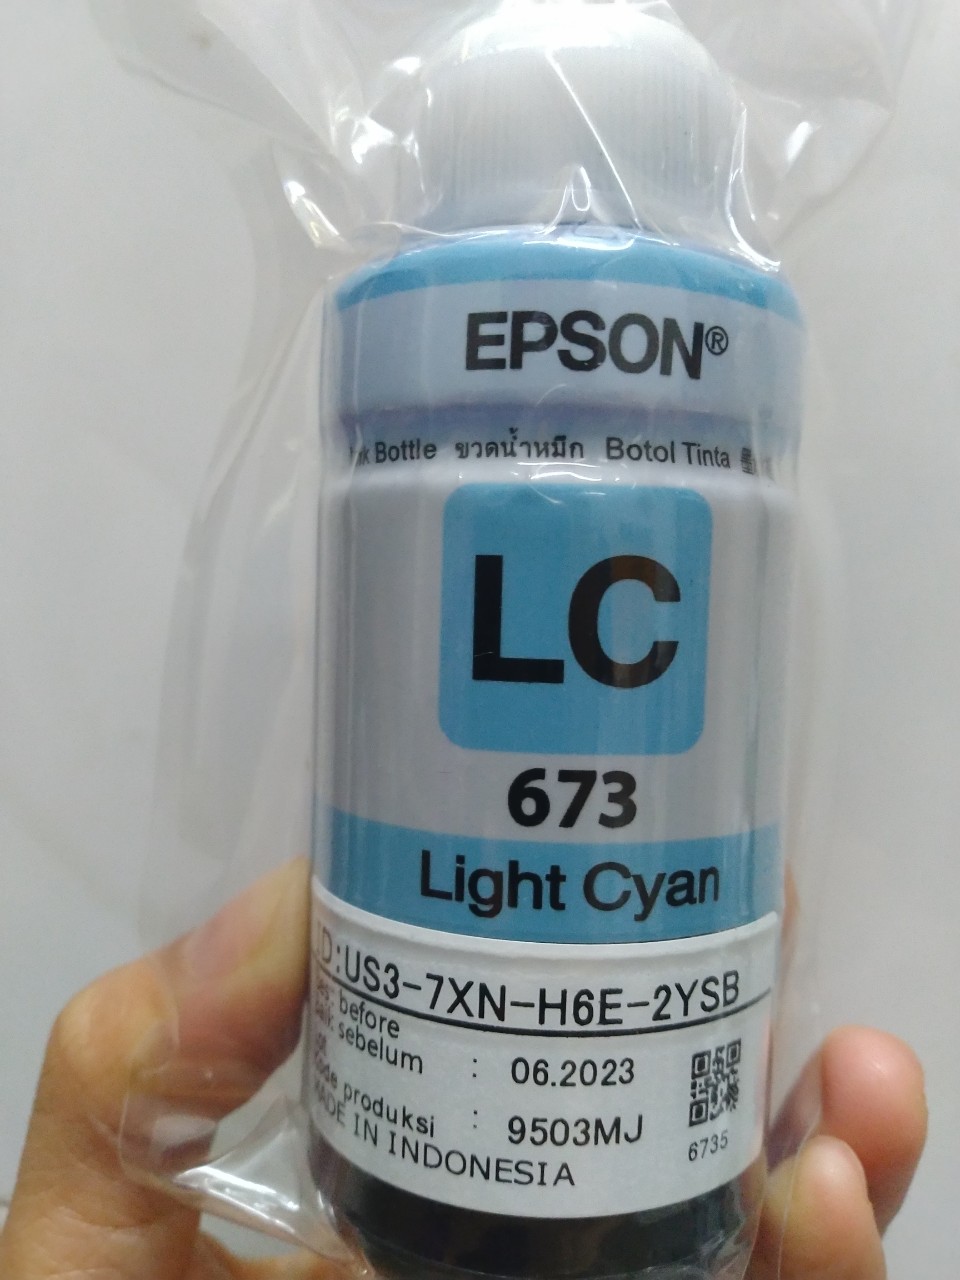 Chai mực màu xanh nhạt dành cho máy Epson L805 / L850 / L1800 / L810 / L800 -light cyan